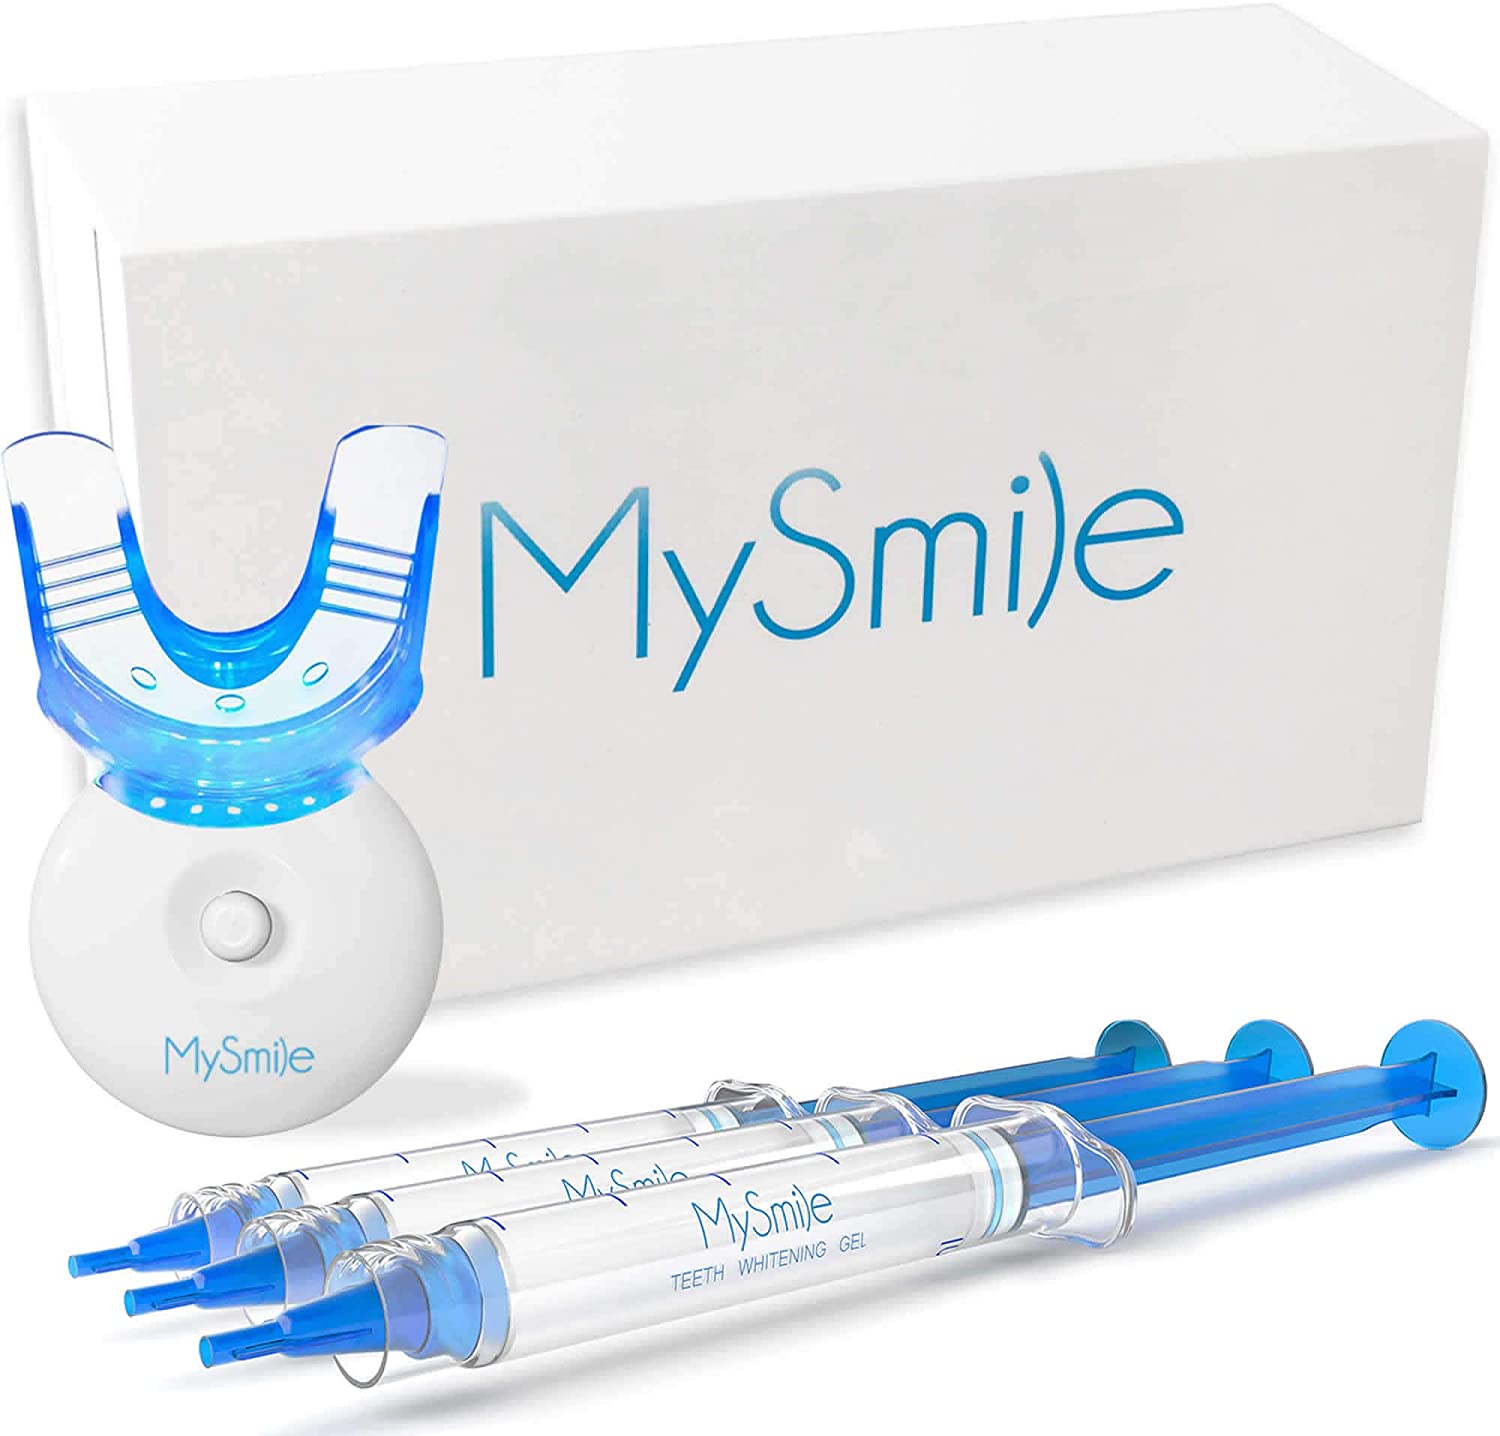 1. MySmile Teeth Whitening Kit